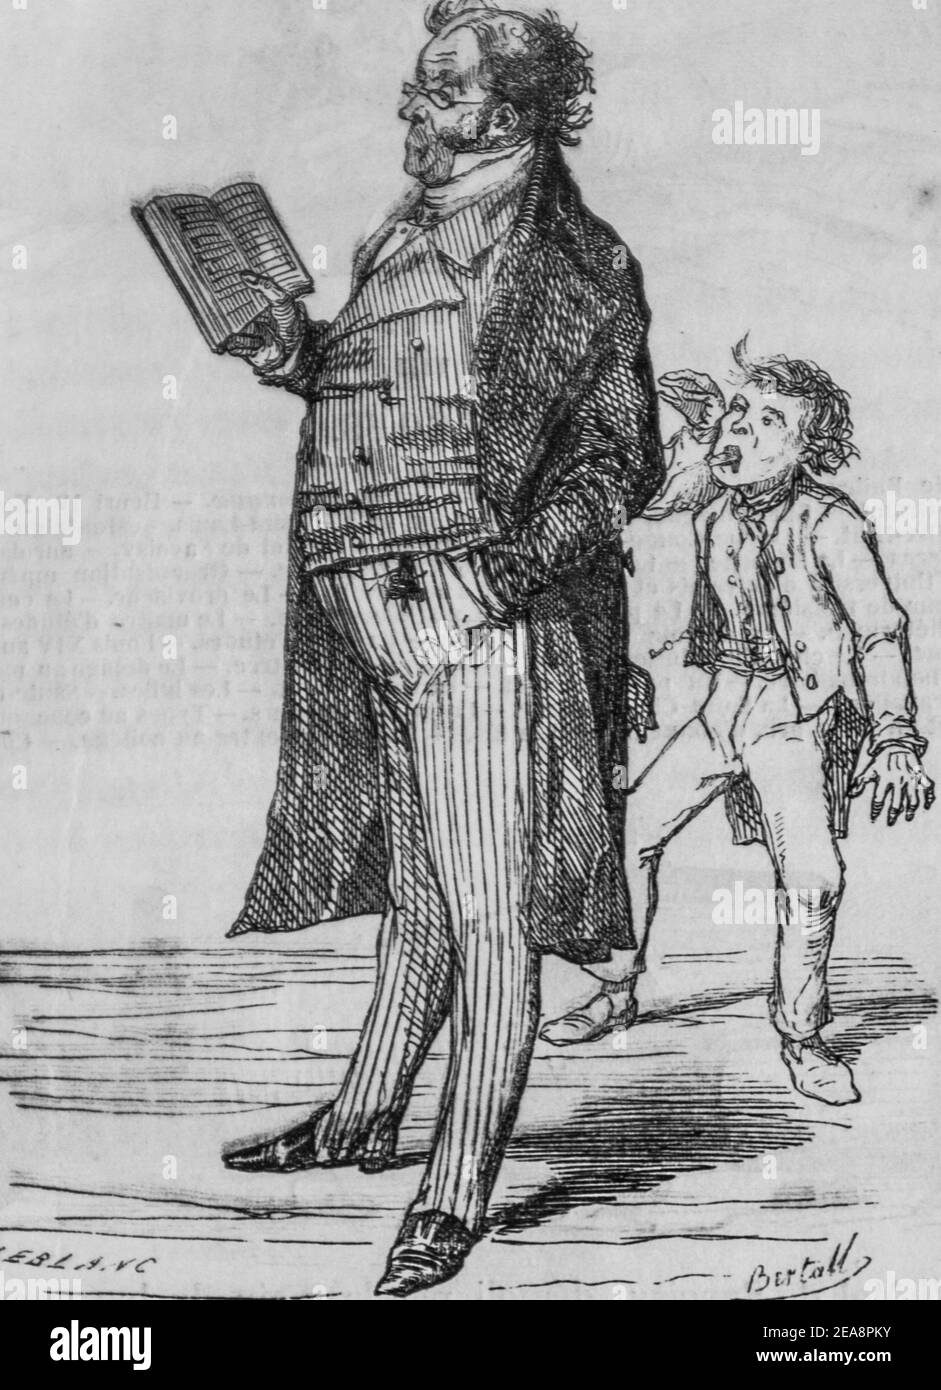 le fournisseur, tableau de paris par edmond texier, éditeur paulin et le chevalier 1852 Banque D'Images